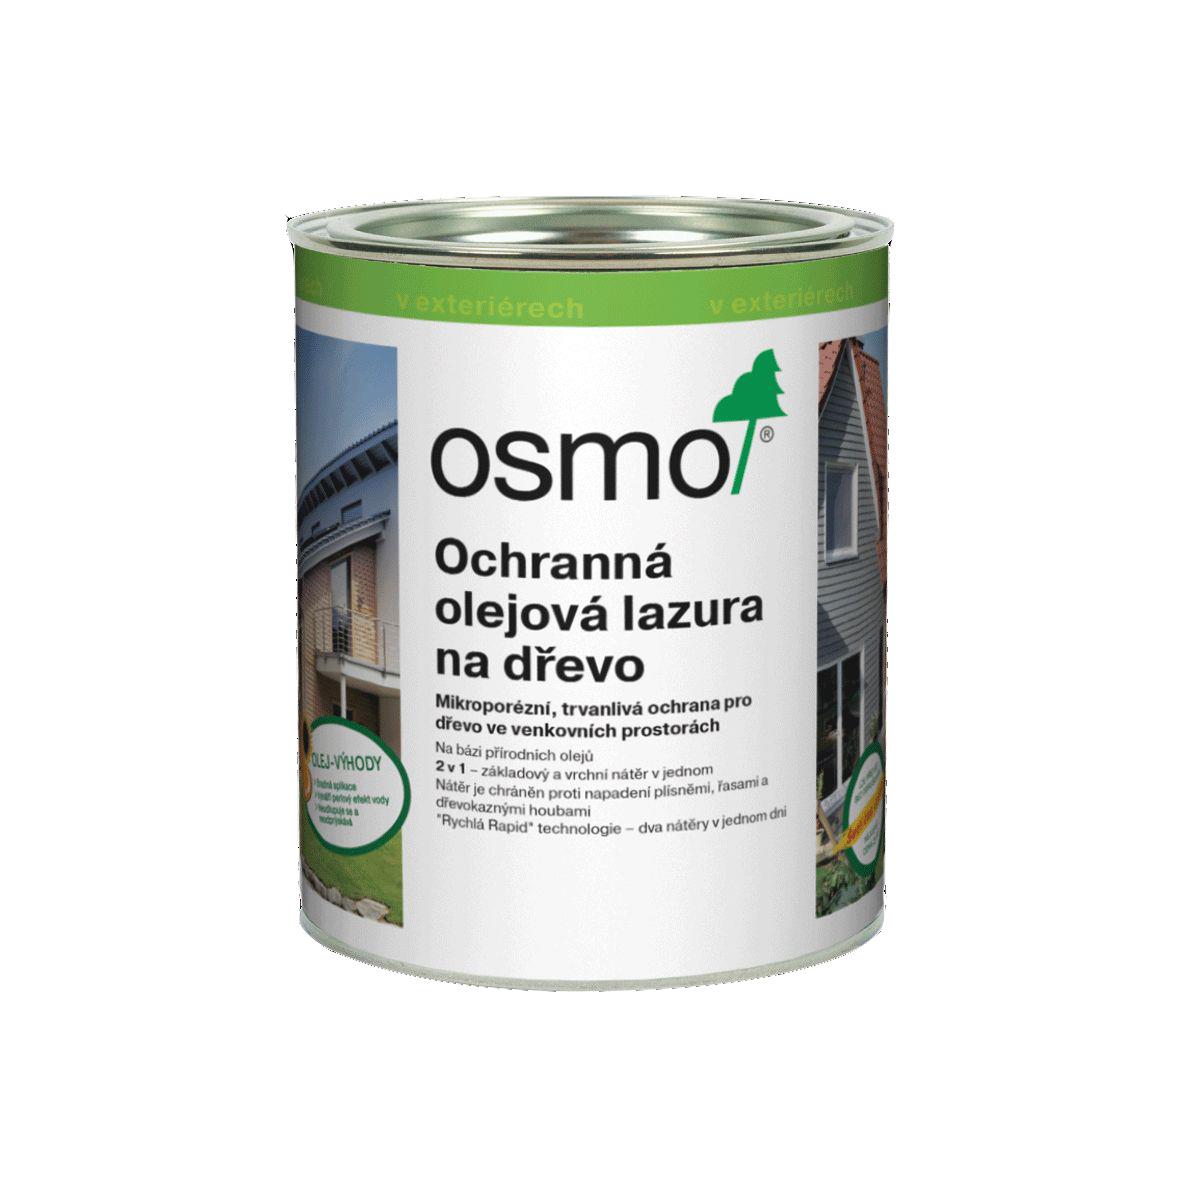 OSMO Ochranná olejová lazura 702 modřín 0,75l